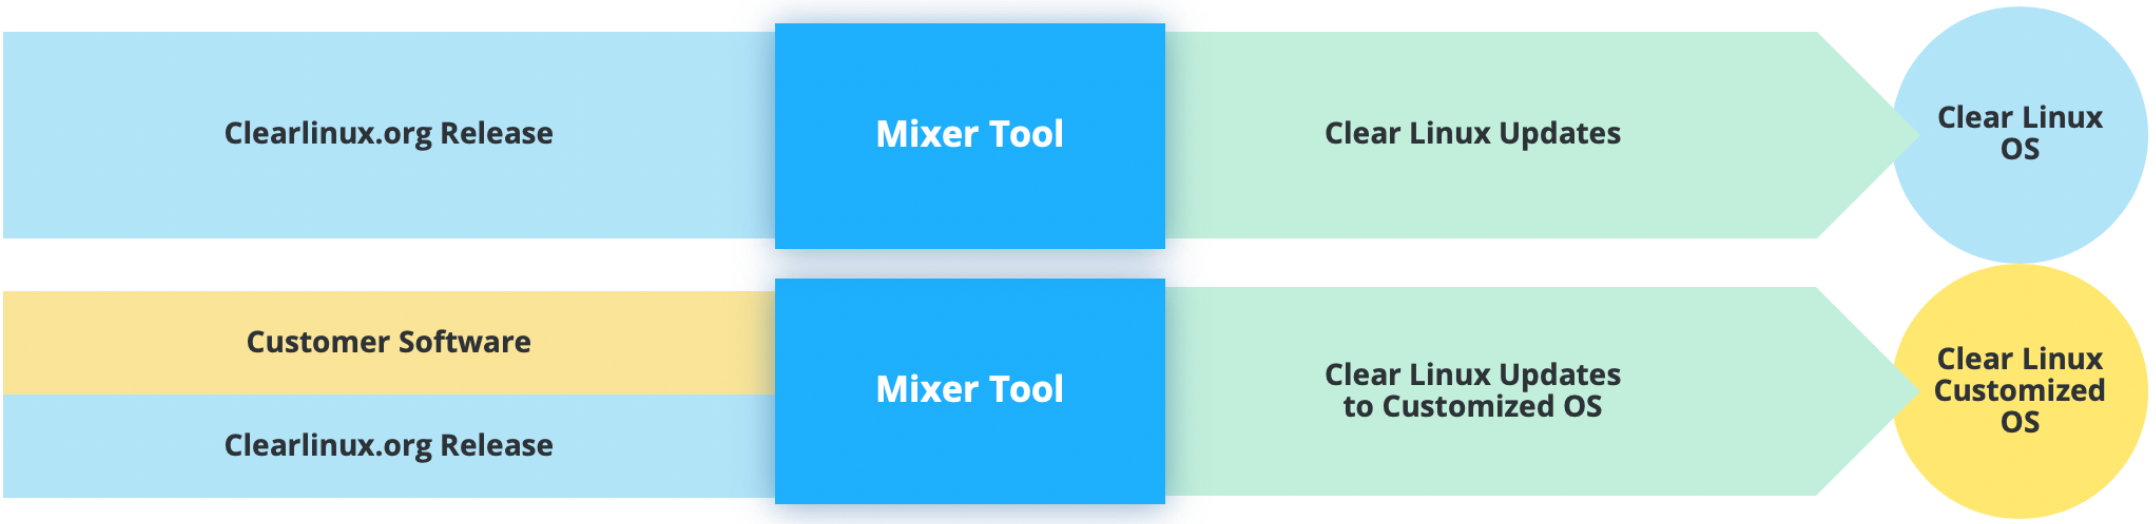 Mixer tool